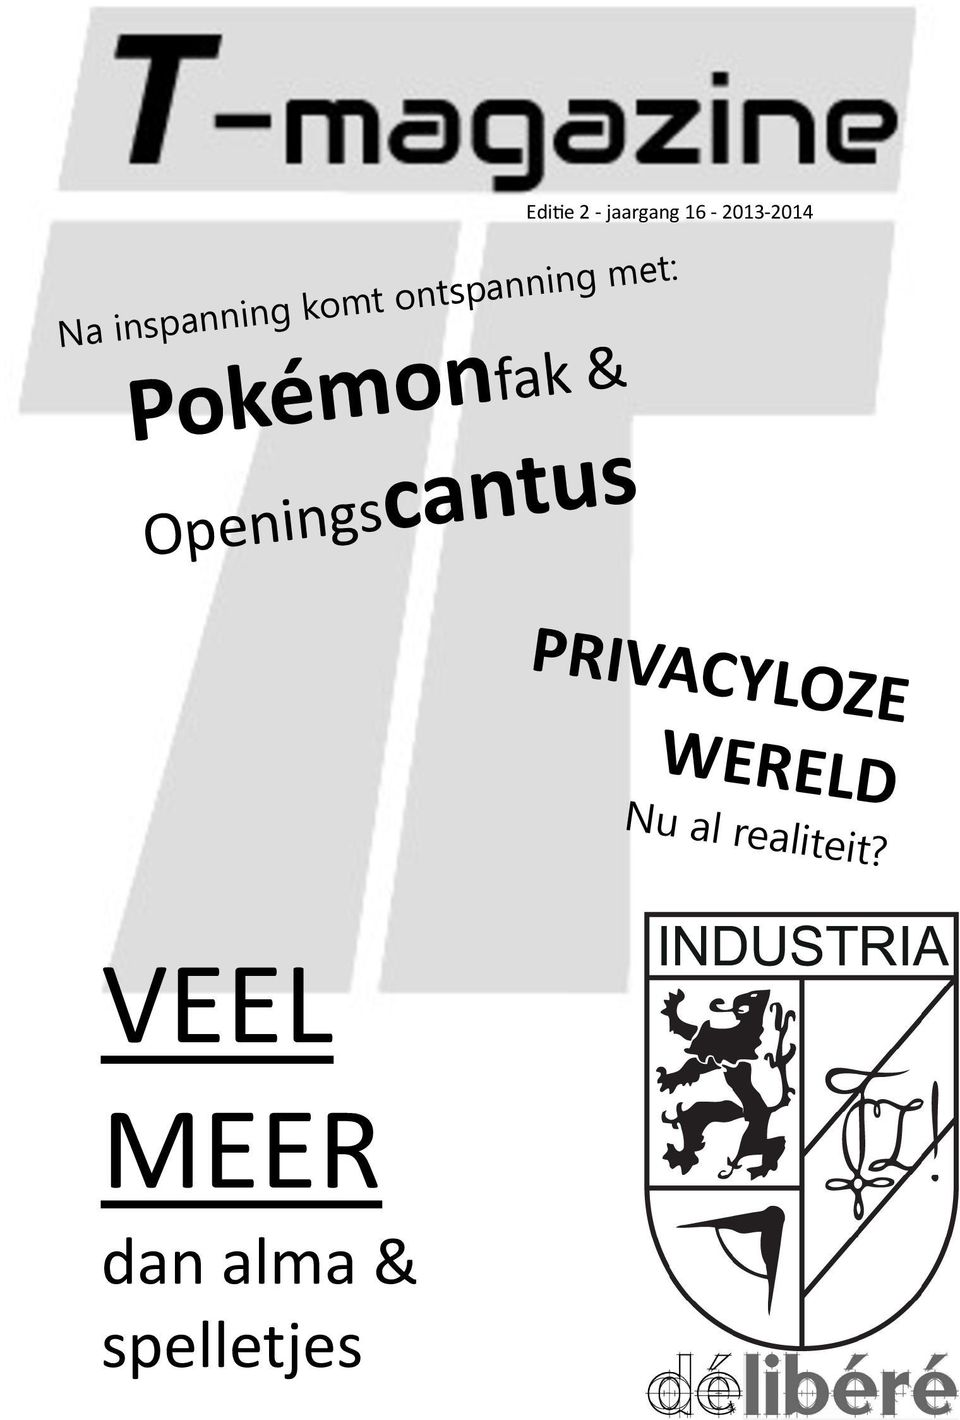 Pokémonfak & Openingscantus PRIVACYLOZE